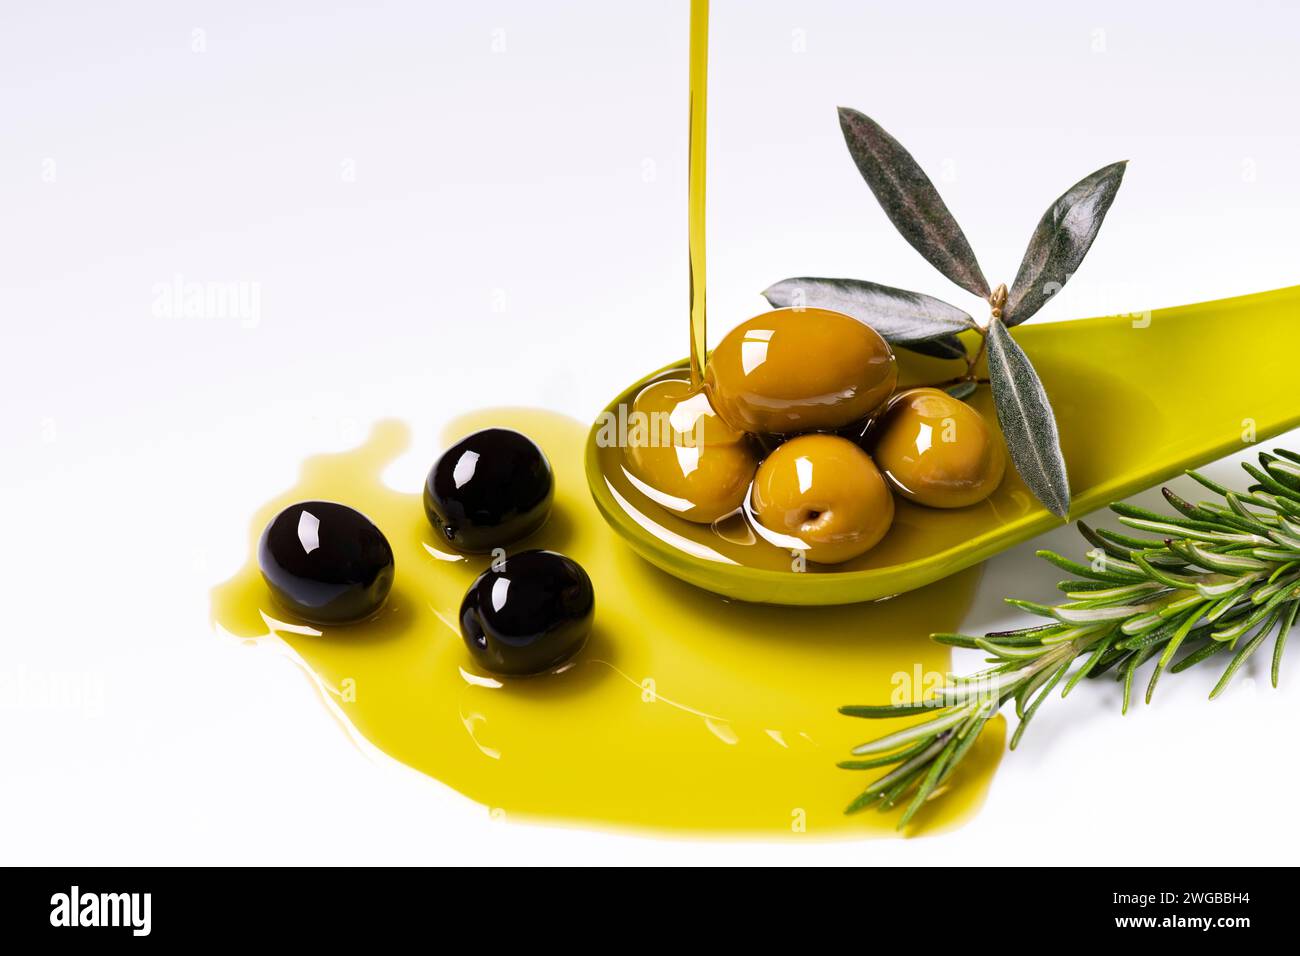 au premier plan, un filet d'huile d'olive extra vierge est versé dans une louche verte avec des olives aromatisées au romarin Banque D'Images